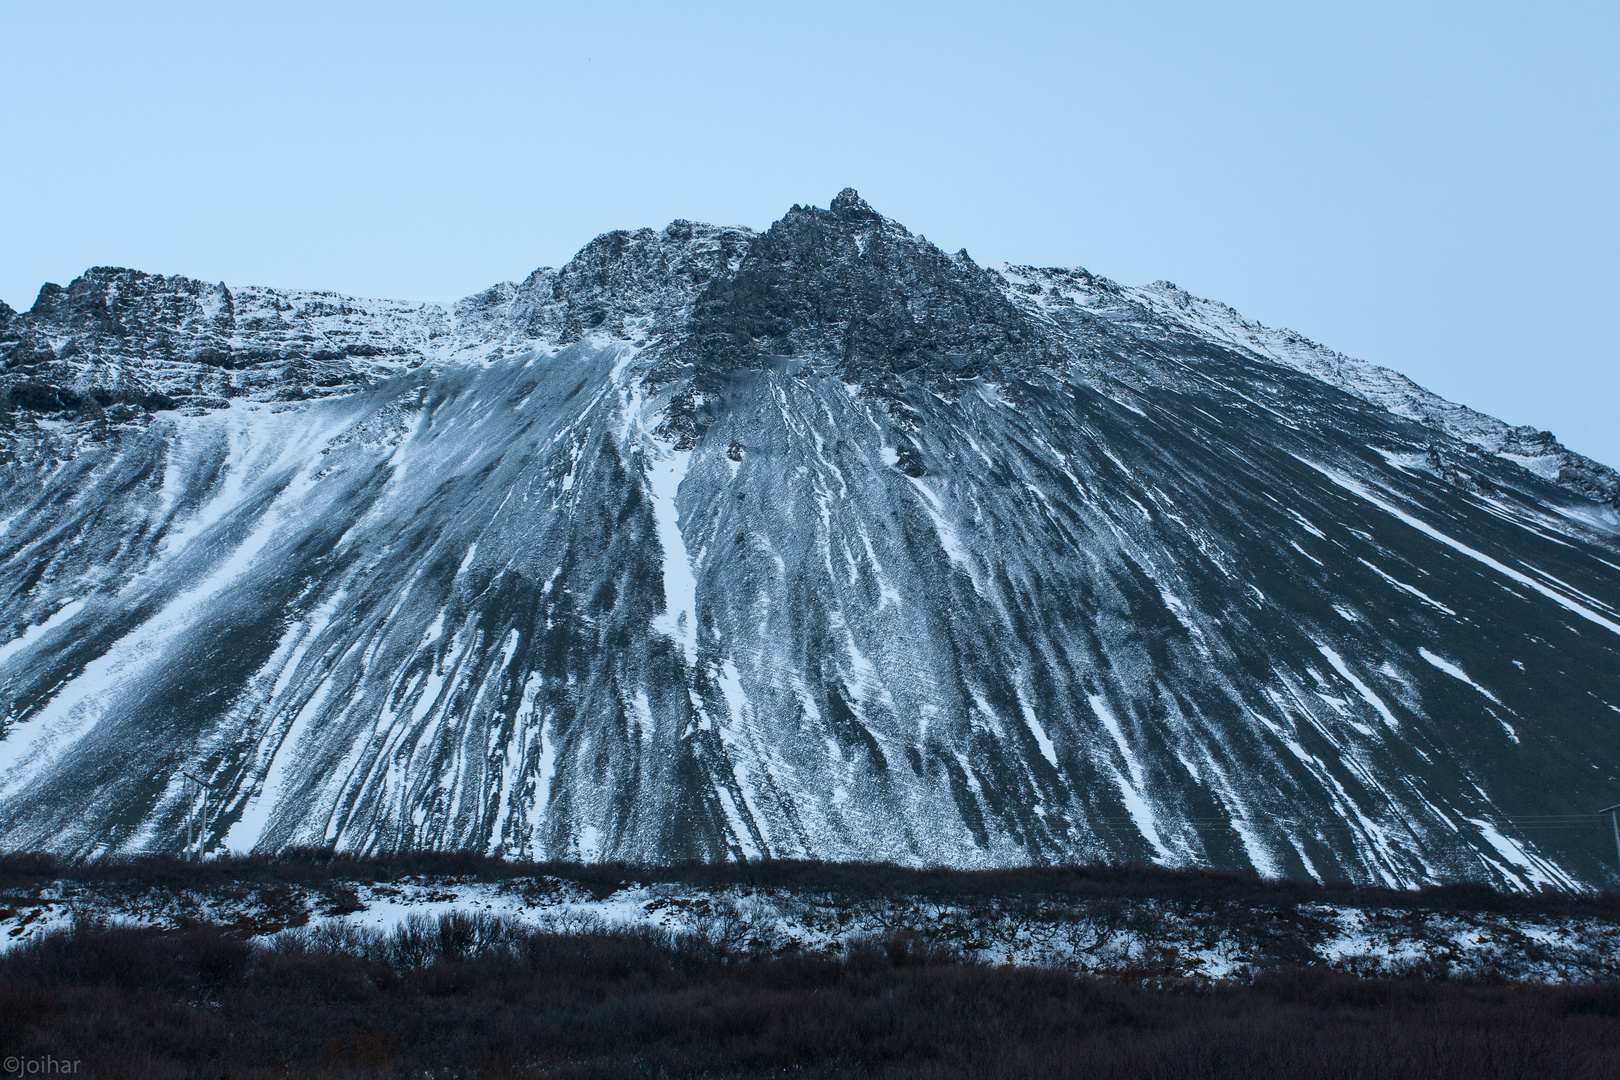 Mountain Hafnarfjall